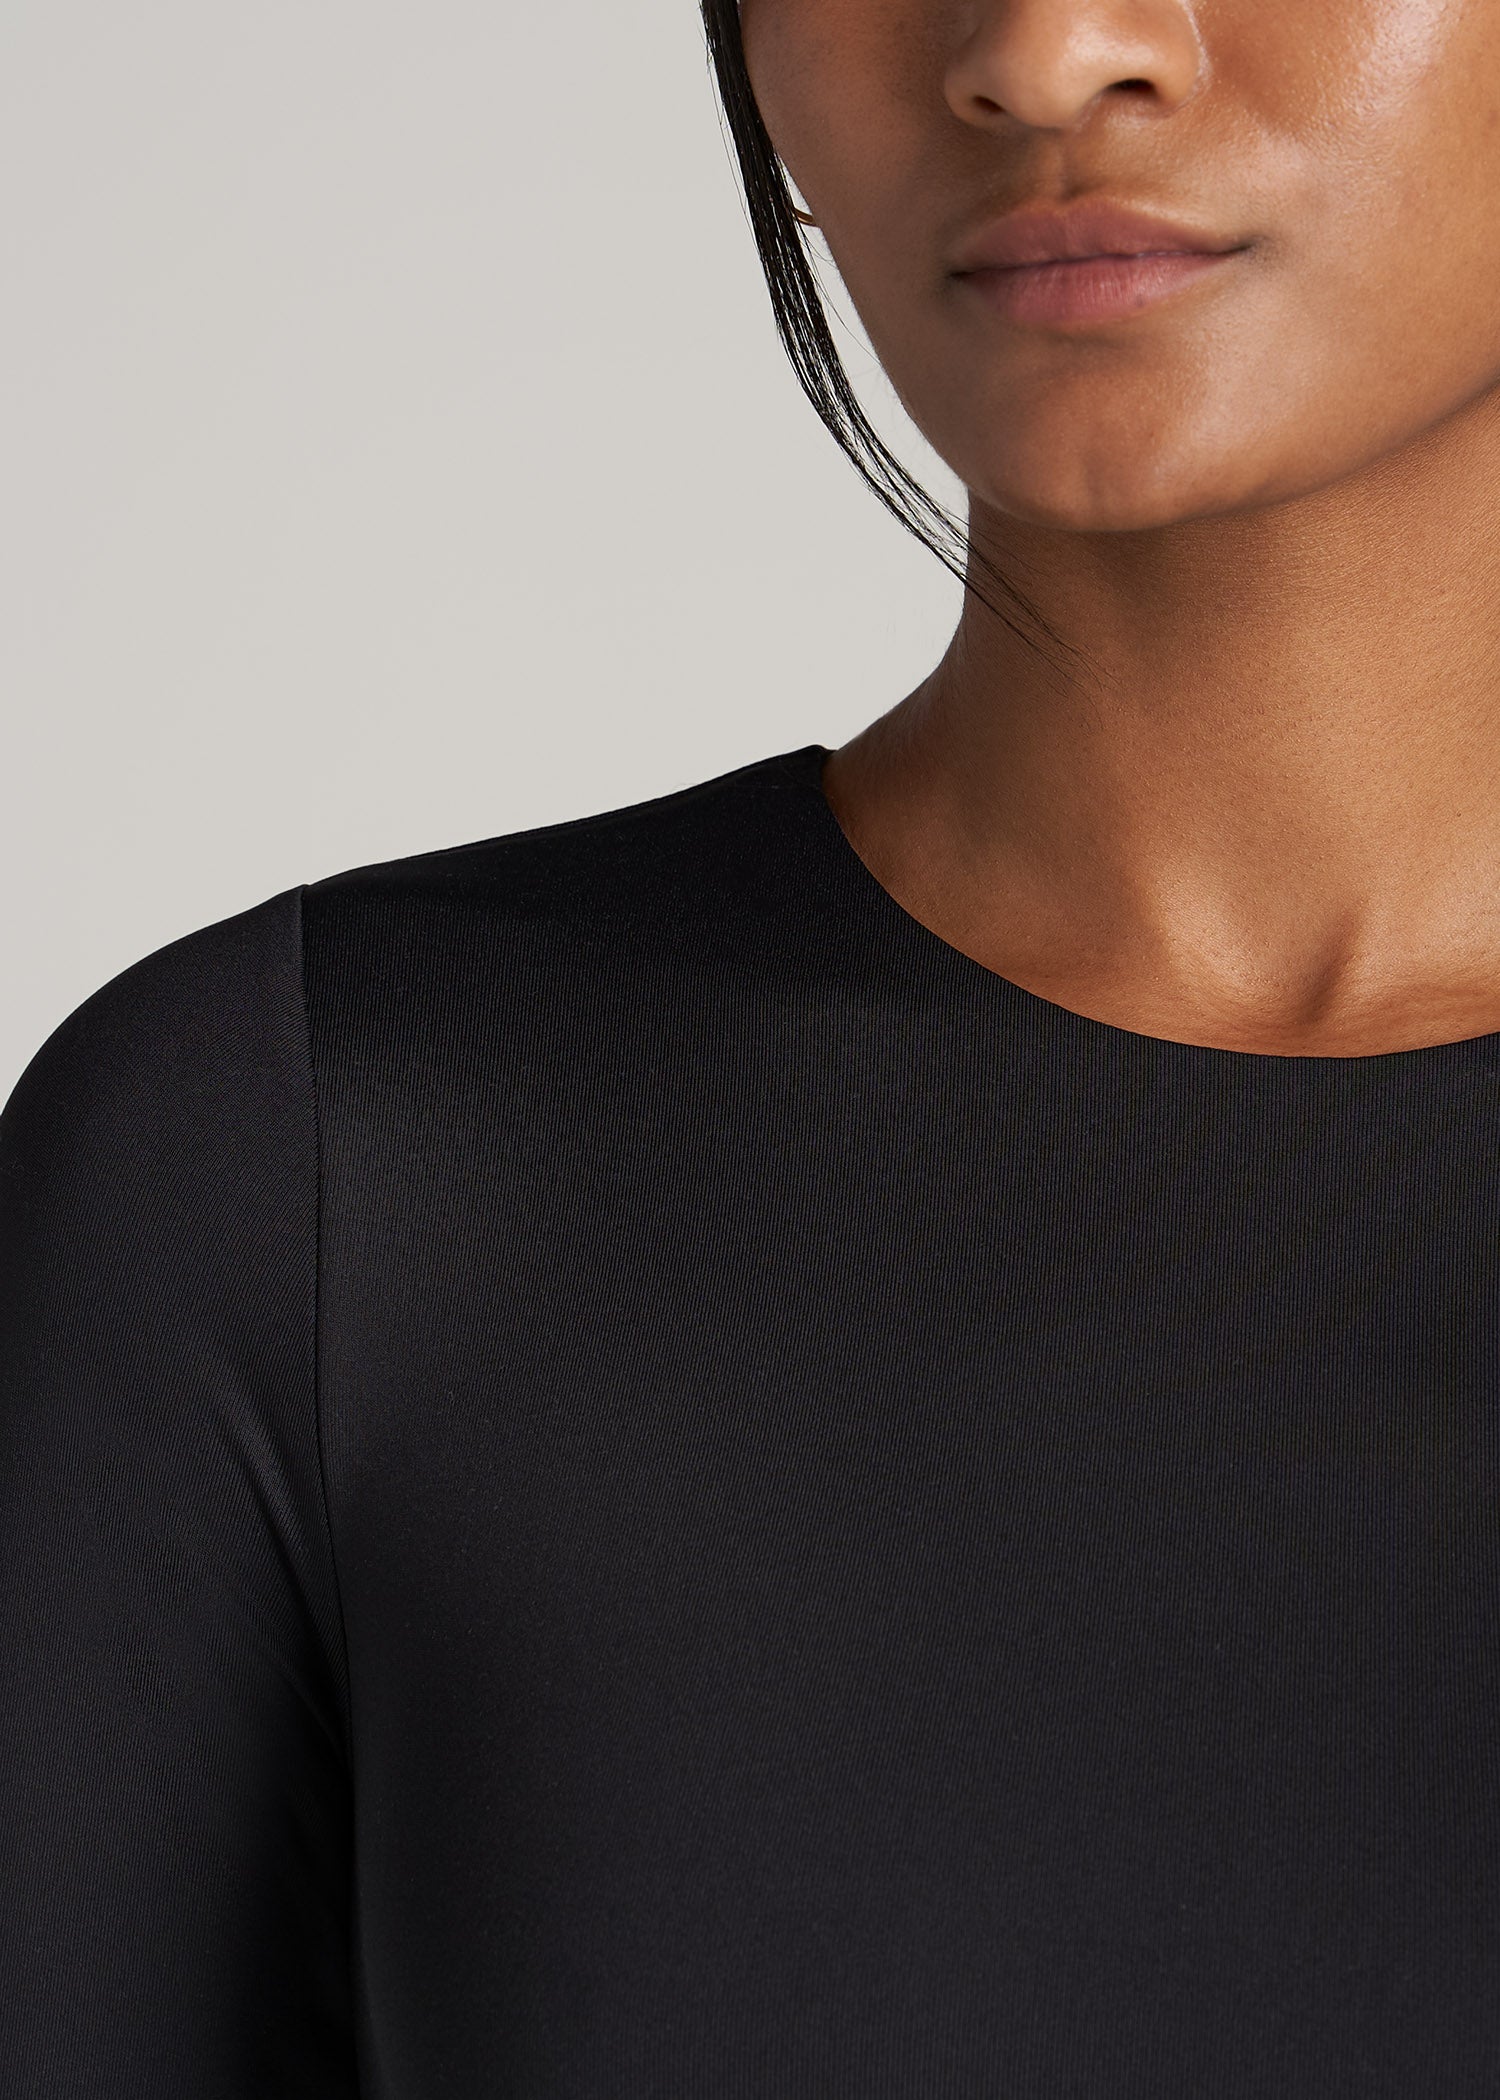 Long Sleeve Bodysuit for Tall Women in Black